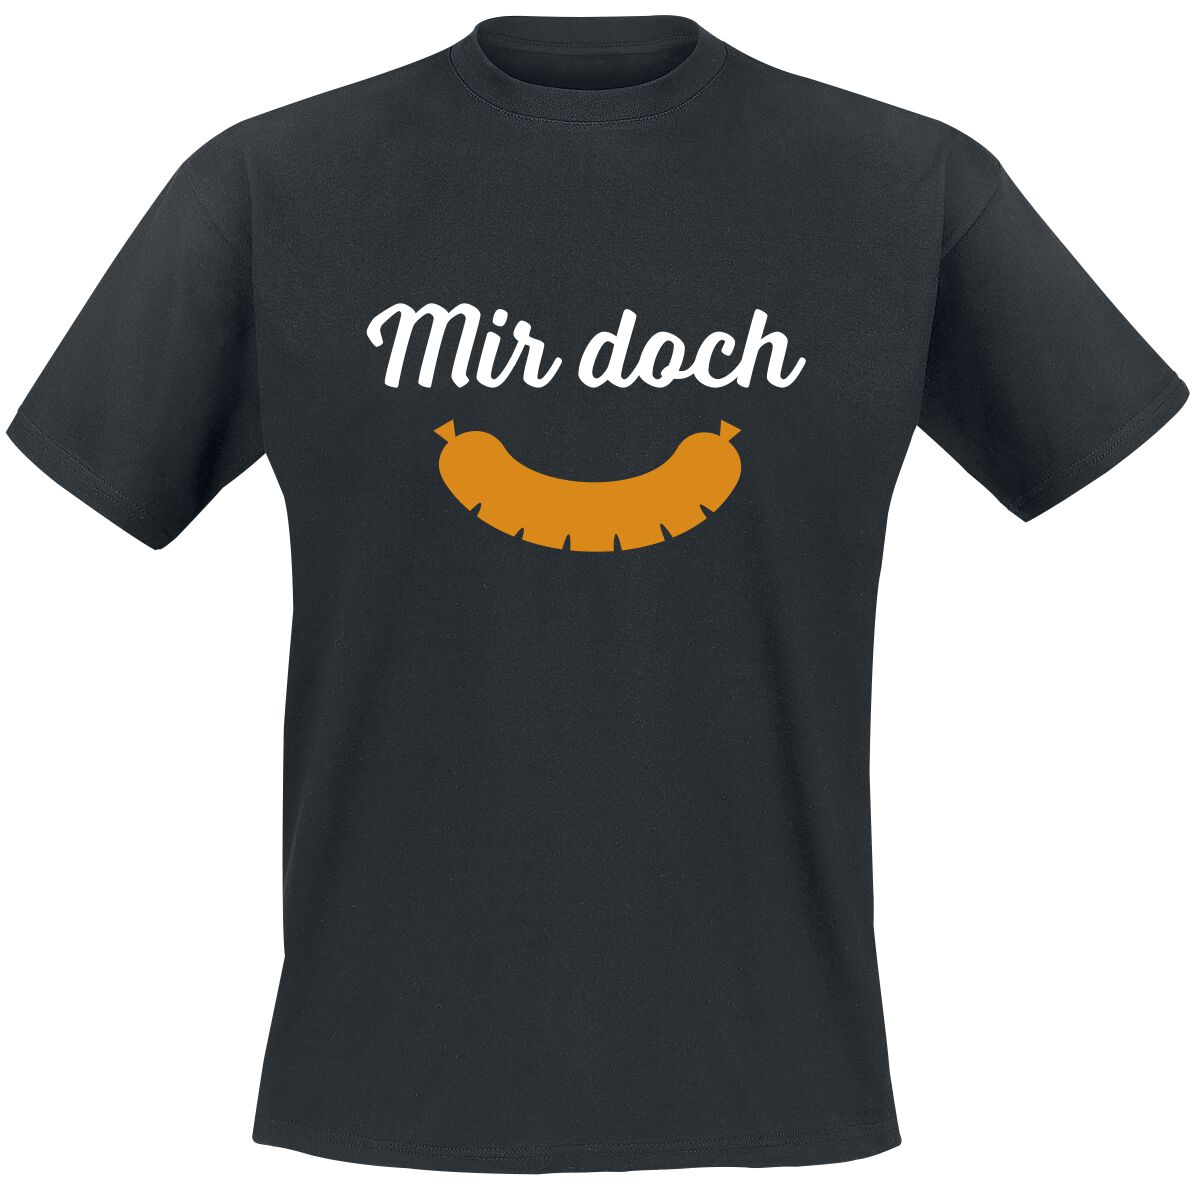 Food T-Shirt - Mir doch Wurst - M bis 5XL - für Männer - Größe L - schwarz